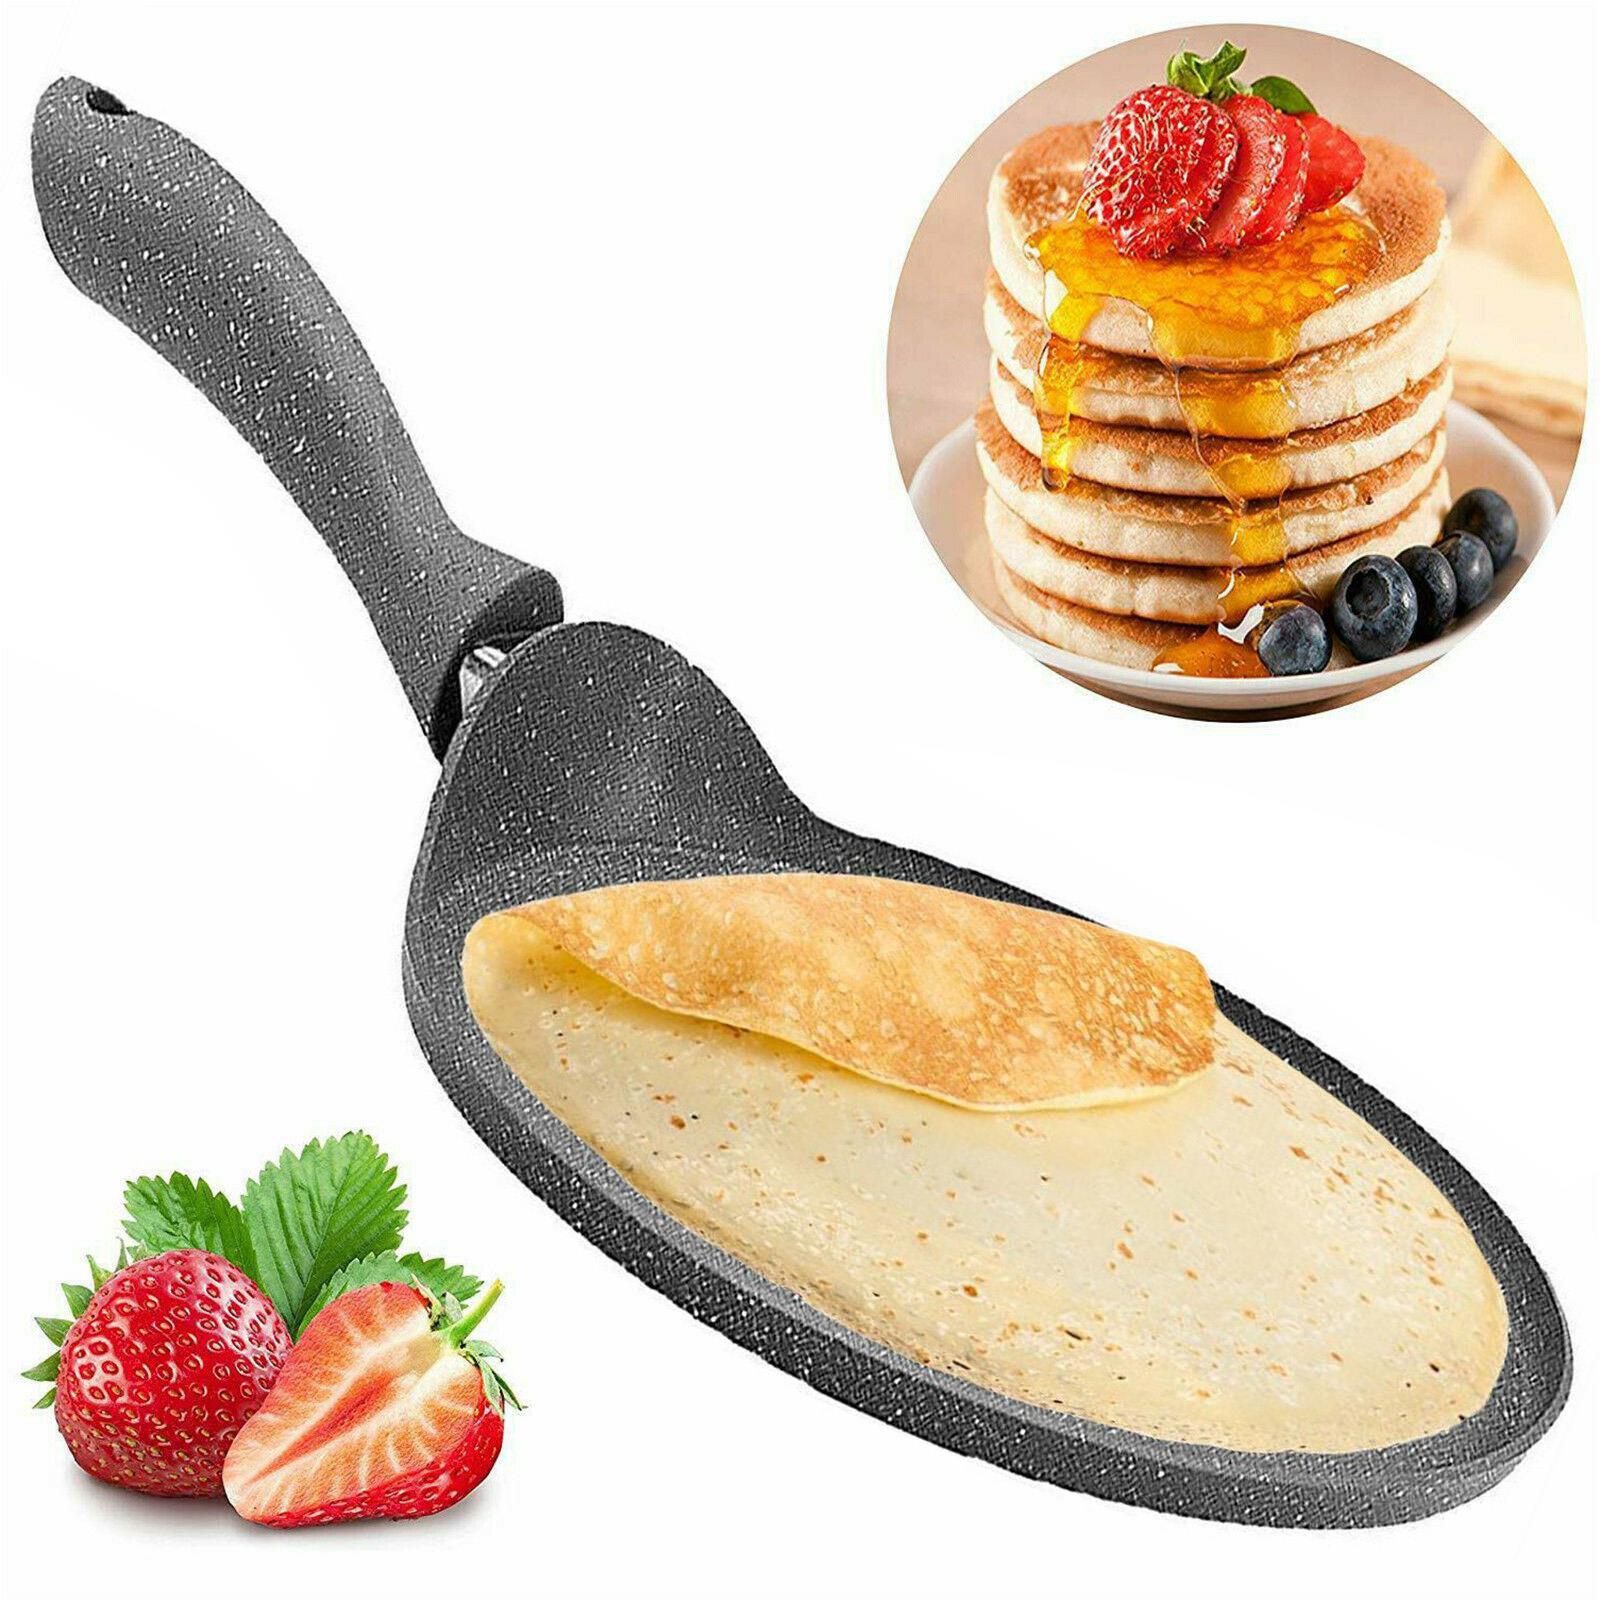 6 Inch Nonstick Crepe Pan,Breakfast/Crepe/Tortilla Pan, Granite